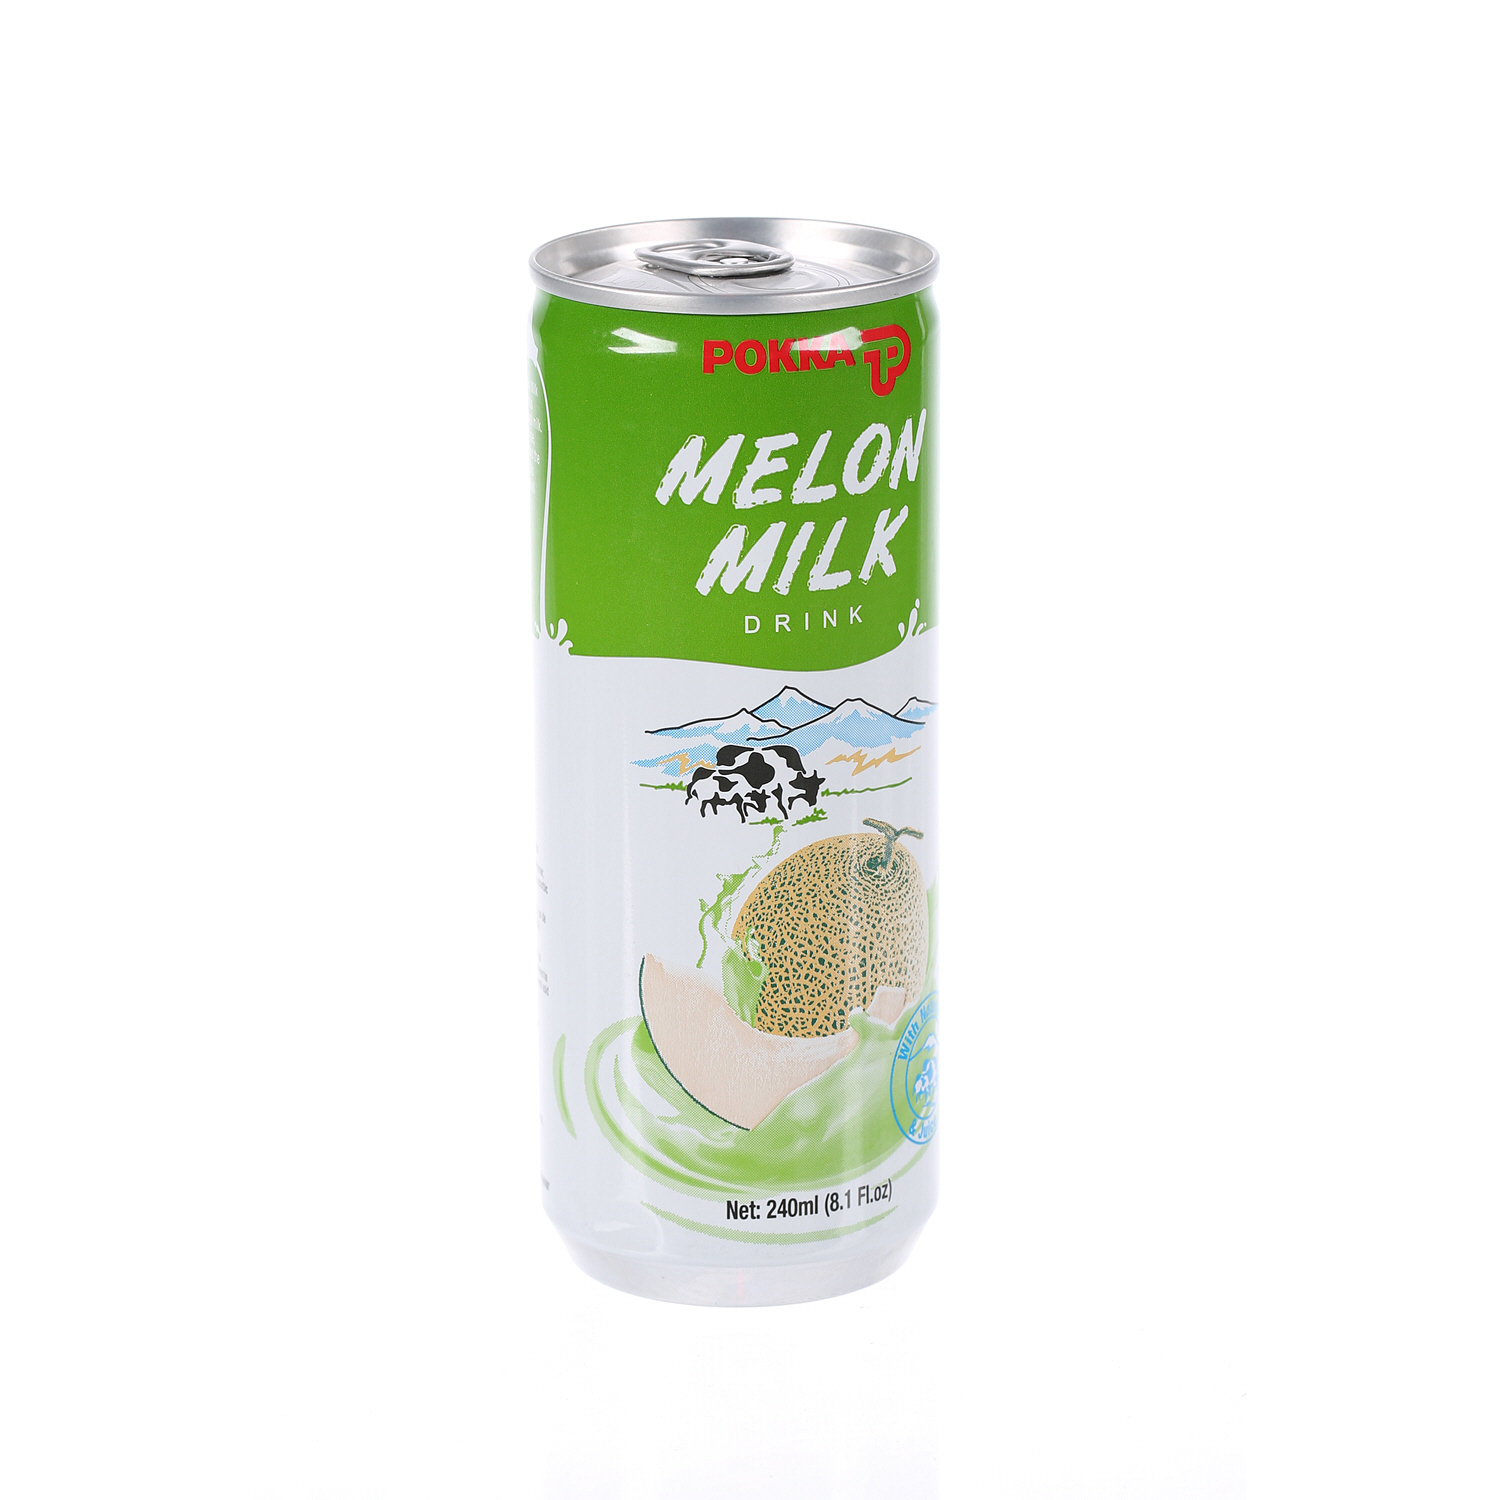 Pokka Melon Milk 240ml